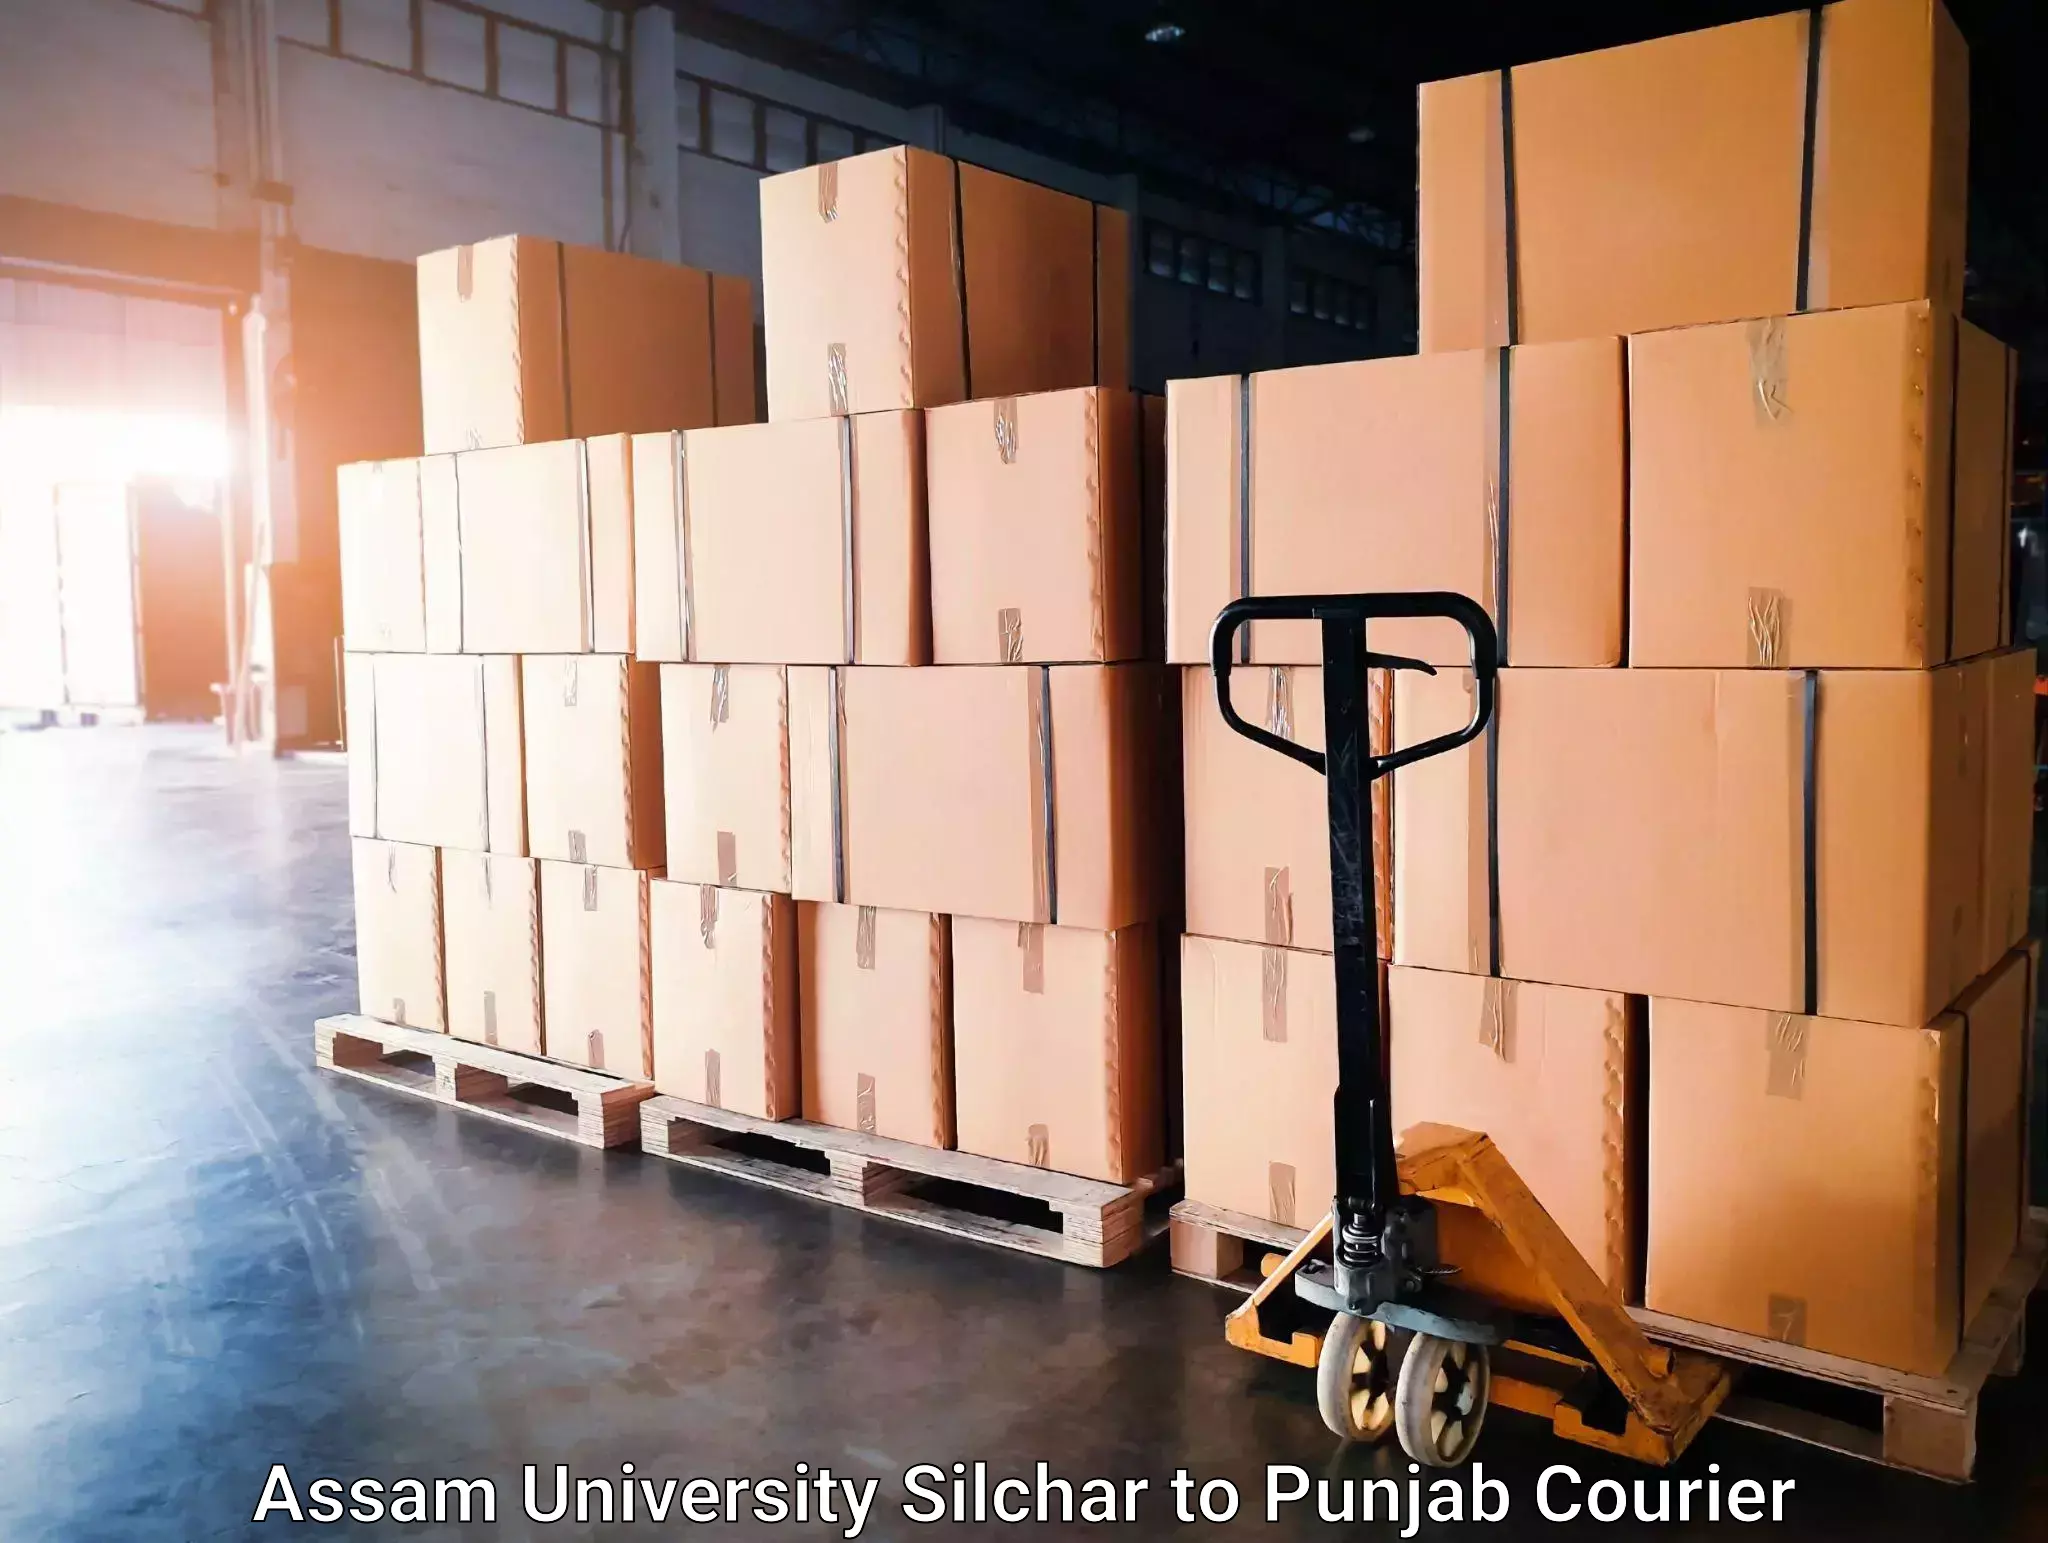 Door-to-door freight service Assam University Silchar to Zirakpur